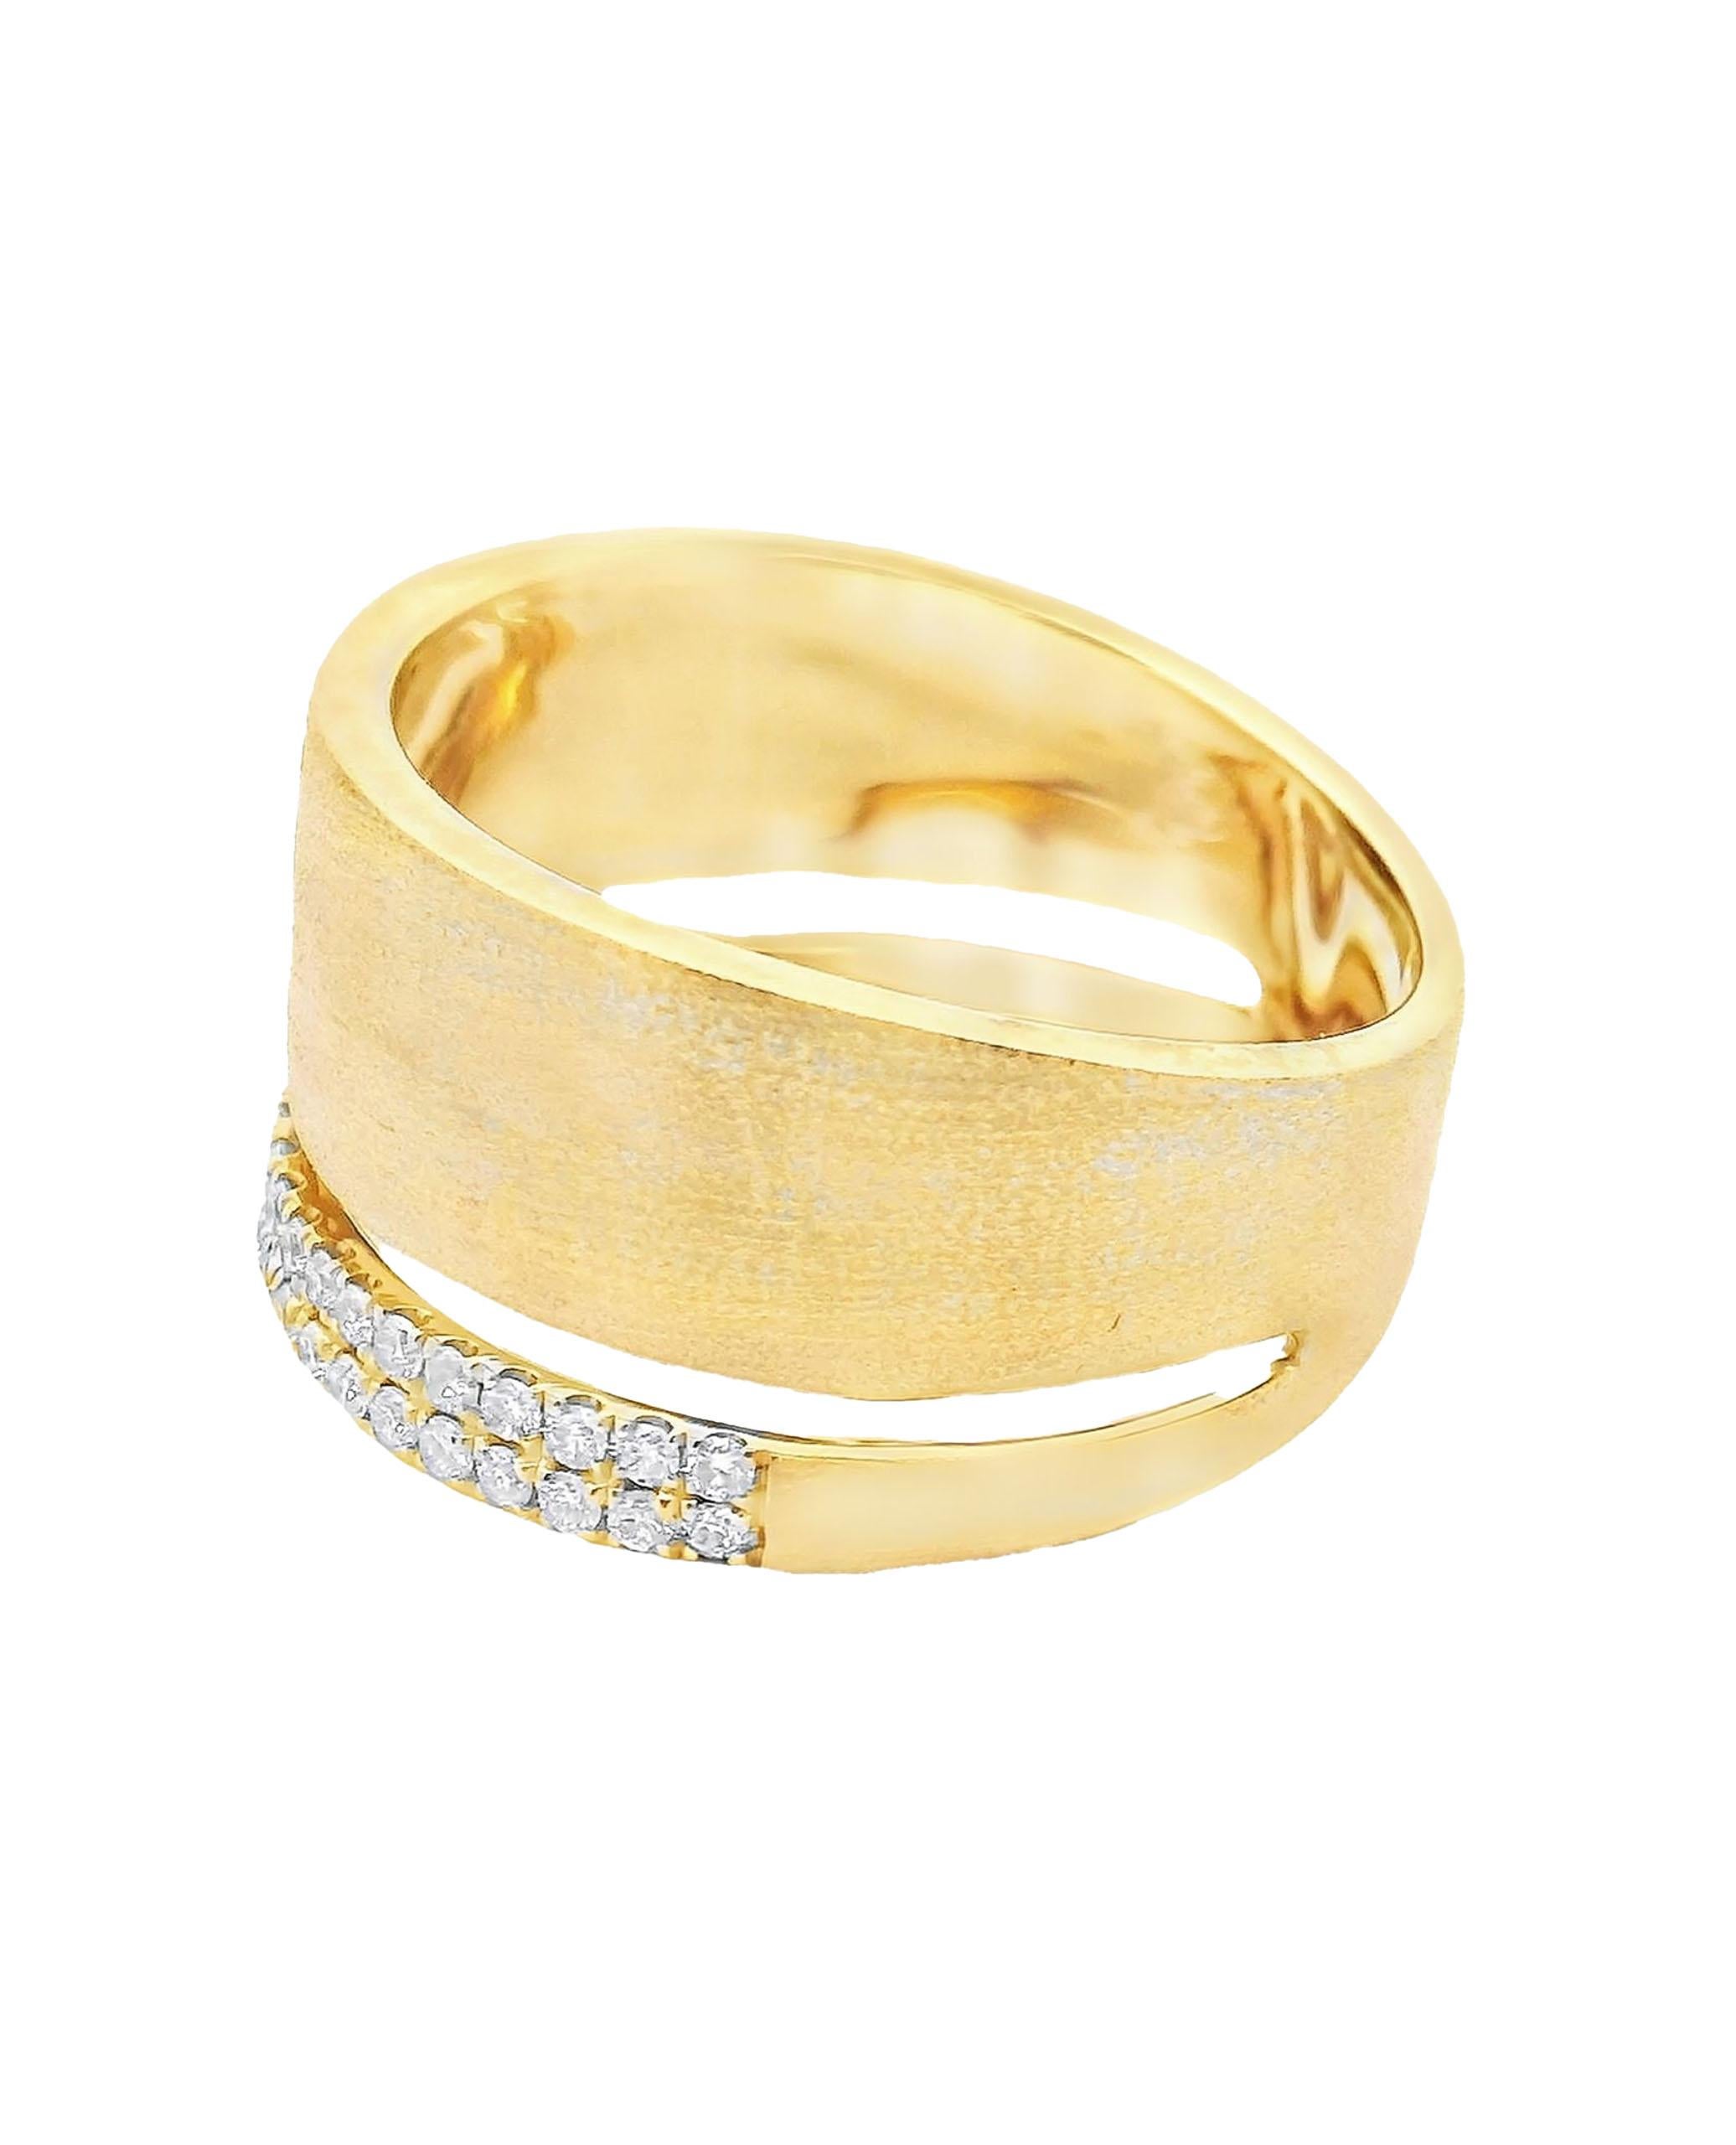 Breiter Ring aus 18 Karat Gelbgold mit matter Oberfläche und runden Diamanten im Brillantschliff von insgesamt 0,27 Karat. 

- Fingergröße 6.75
- Diamanten sind H/I Farbe, SI Klarheit.